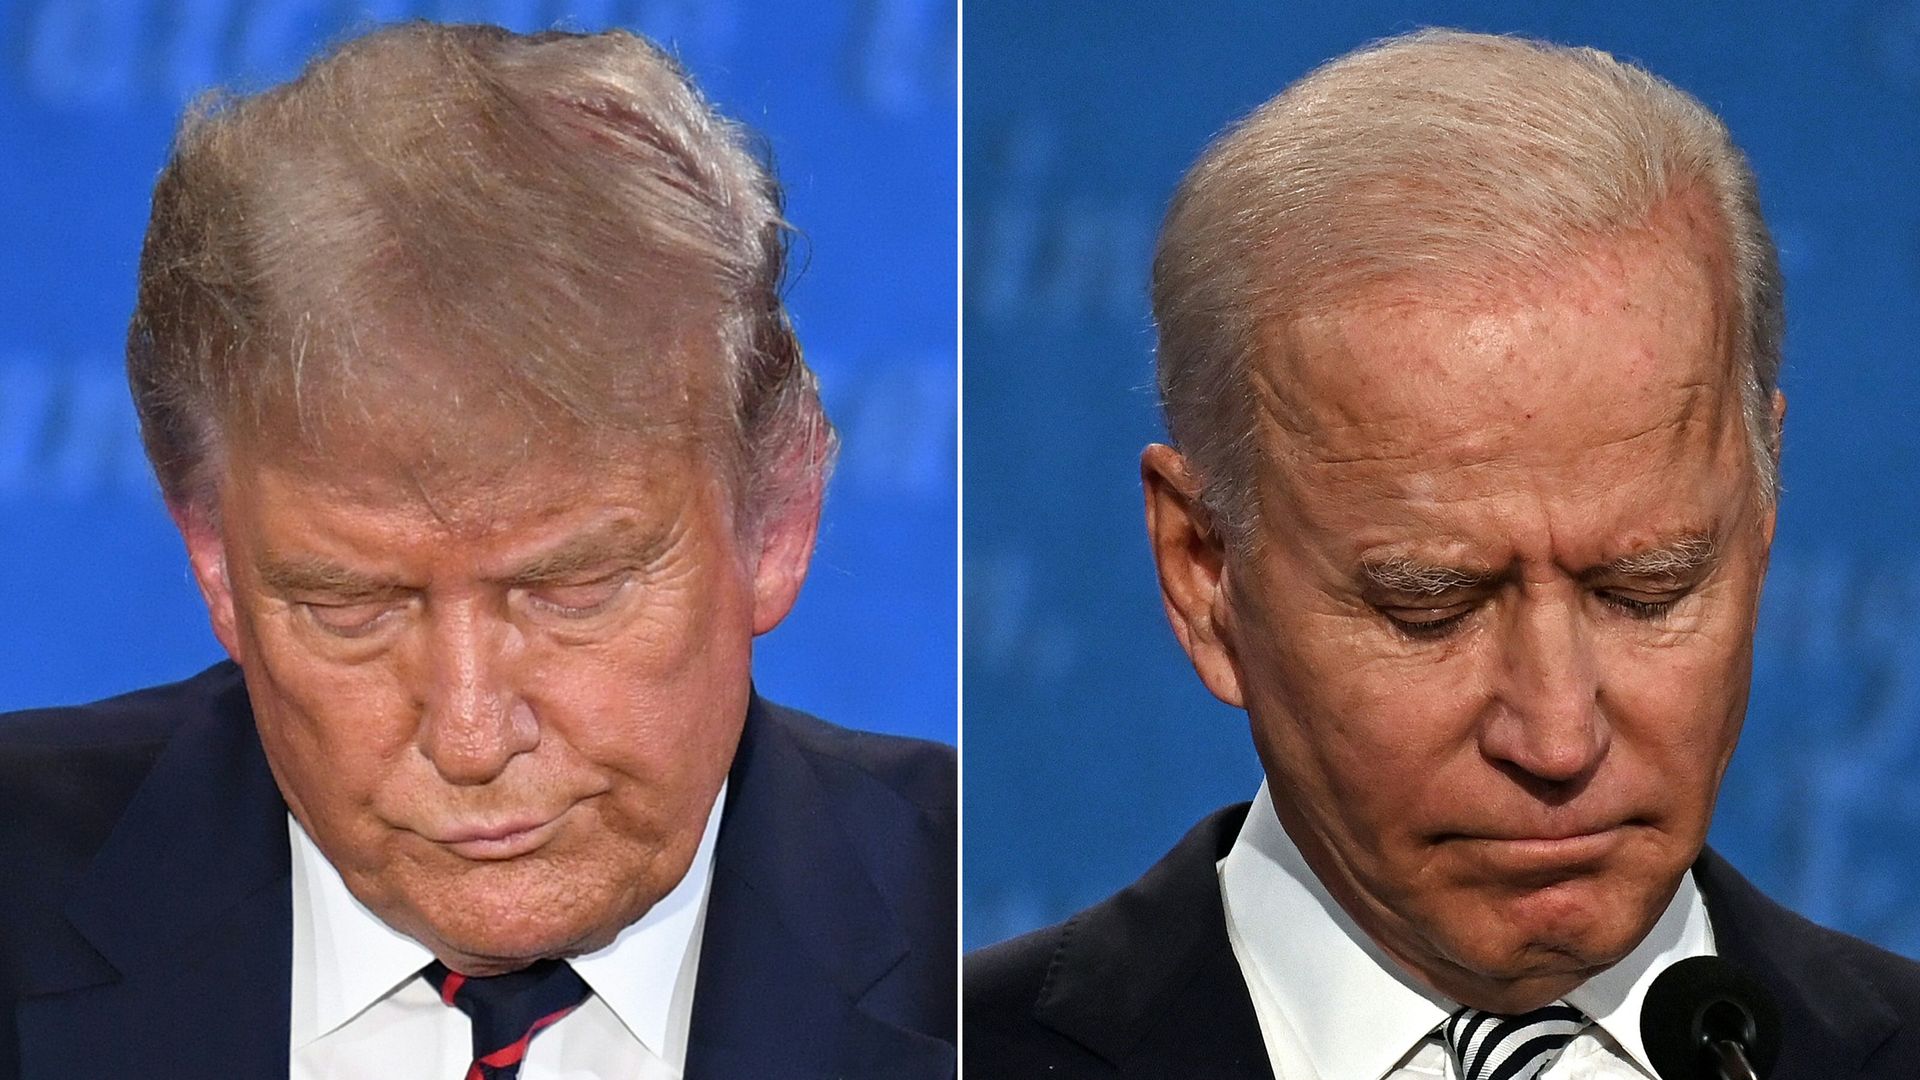 President Trump and Joe Biden looking down during their debate